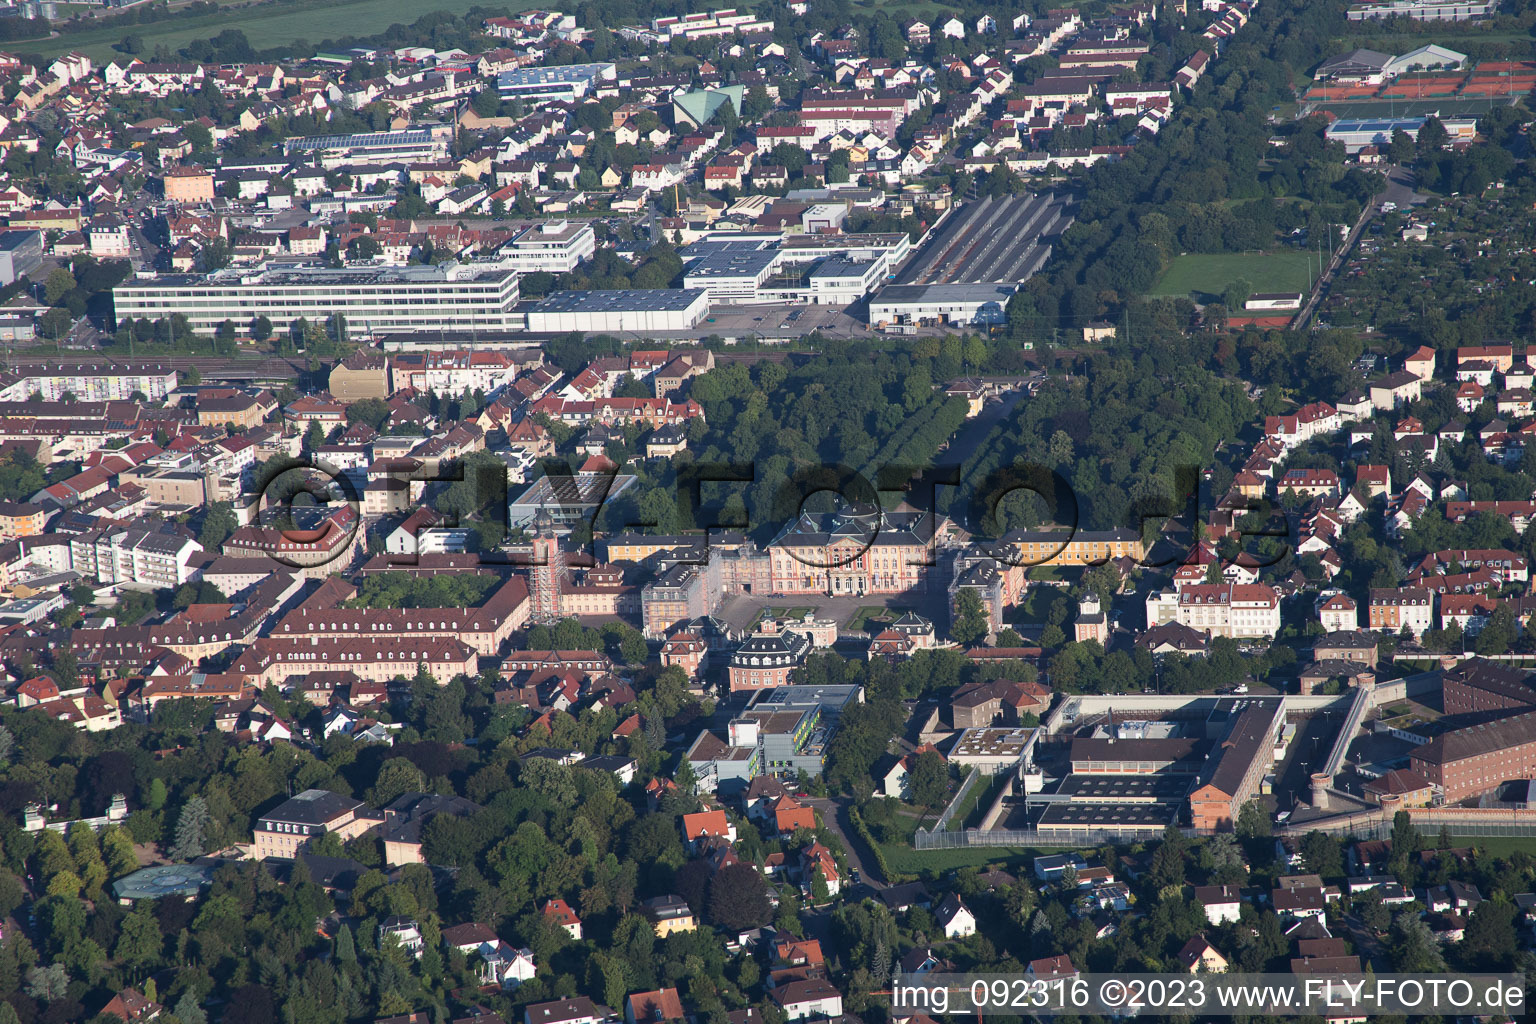 Vue aérienne de Château du nord à Bruchsal dans le département Bade-Wurtemberg, Allemagne